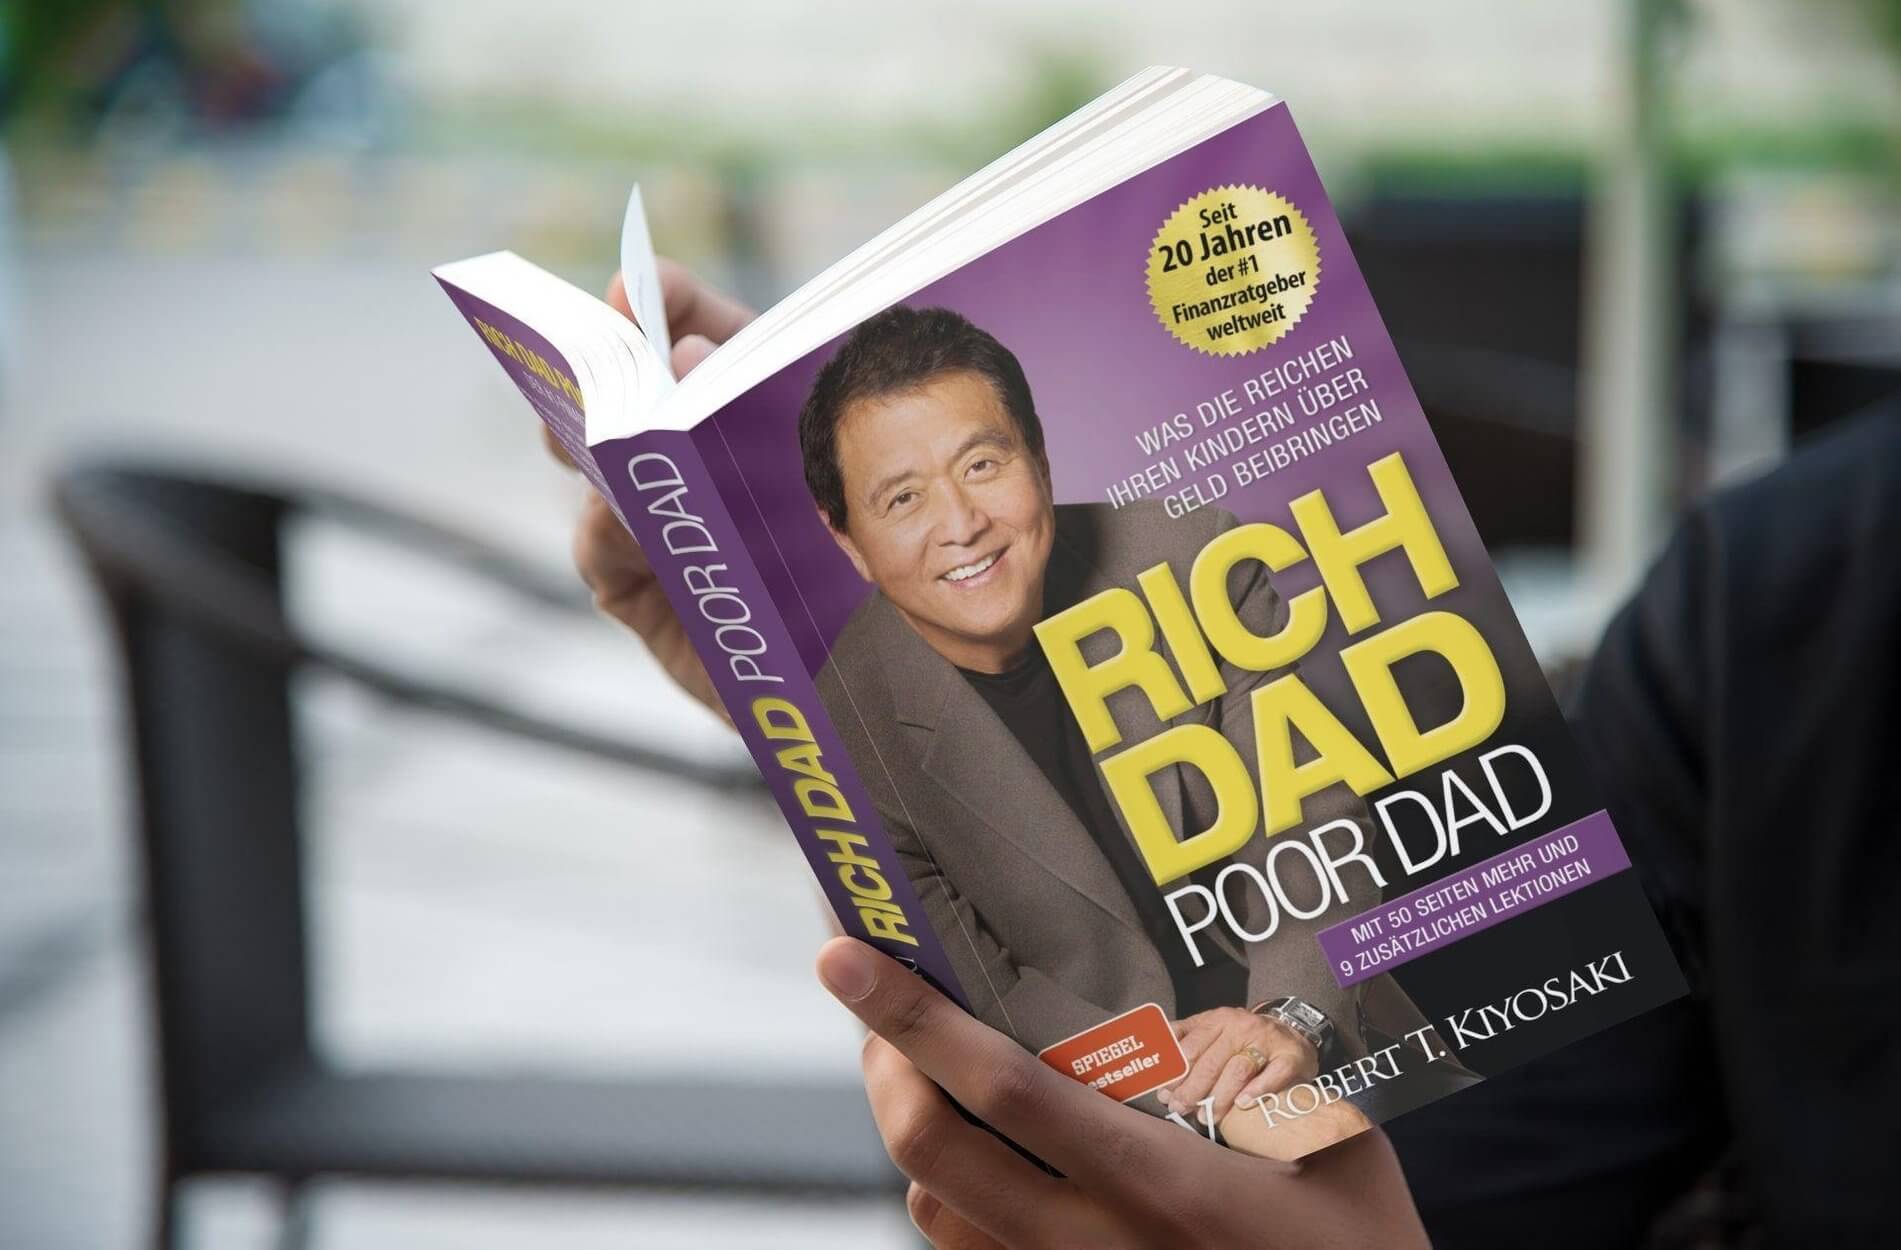 Rich dad poor dad pdf